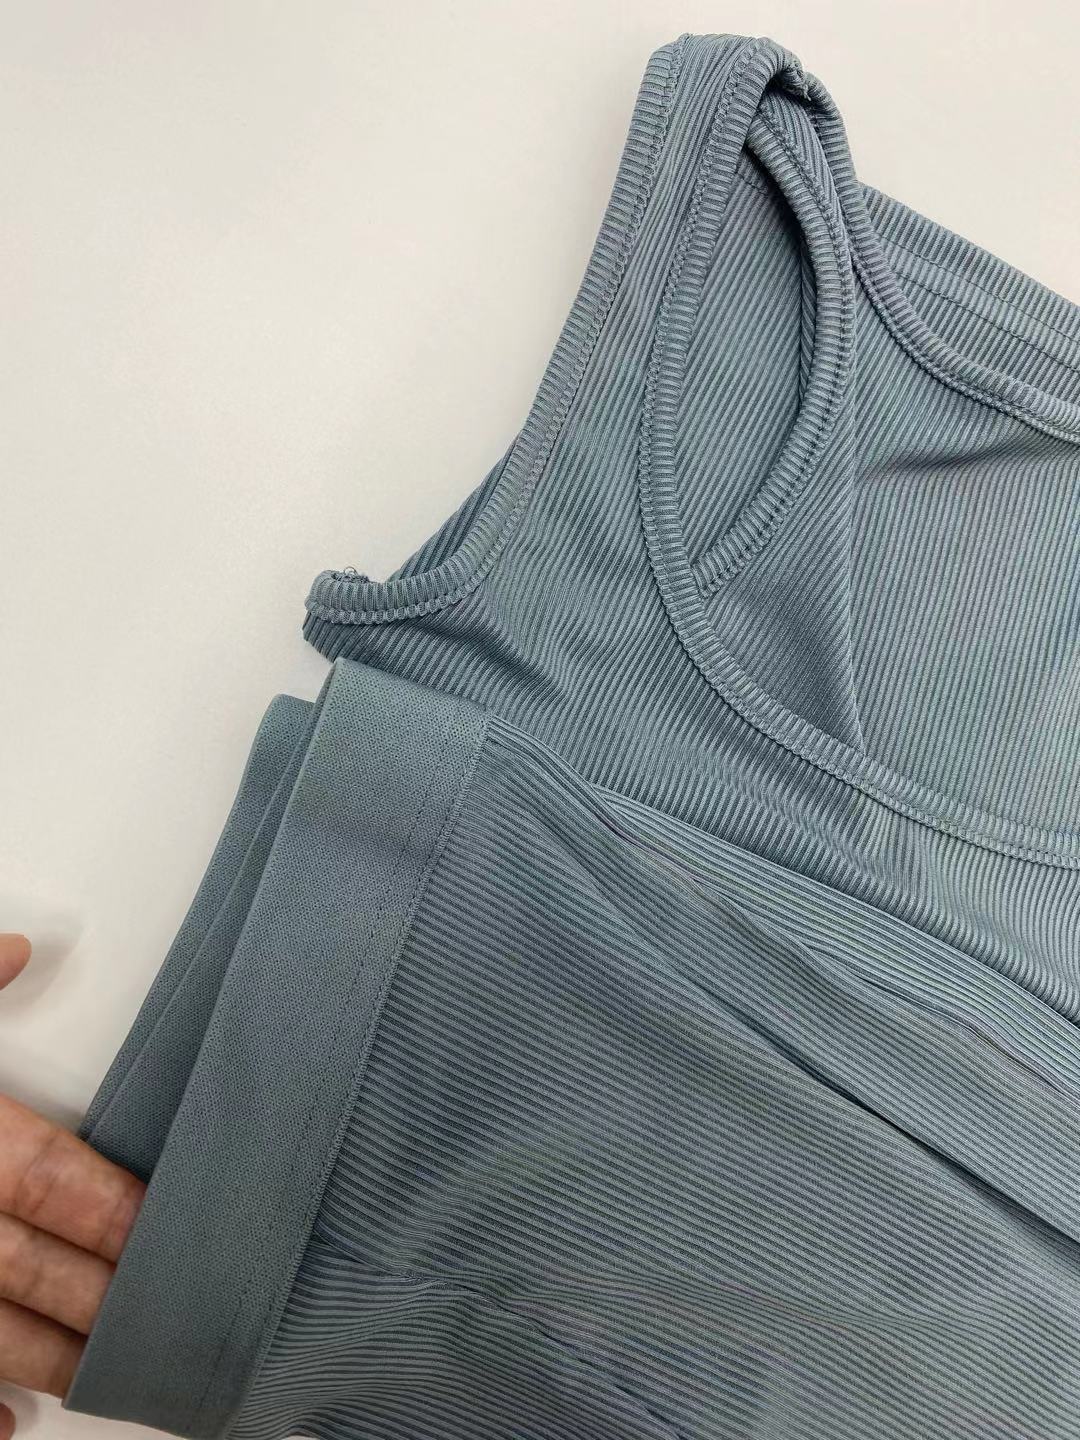 Two Piece Set Solid Pants Suit Rose’Mon Retail